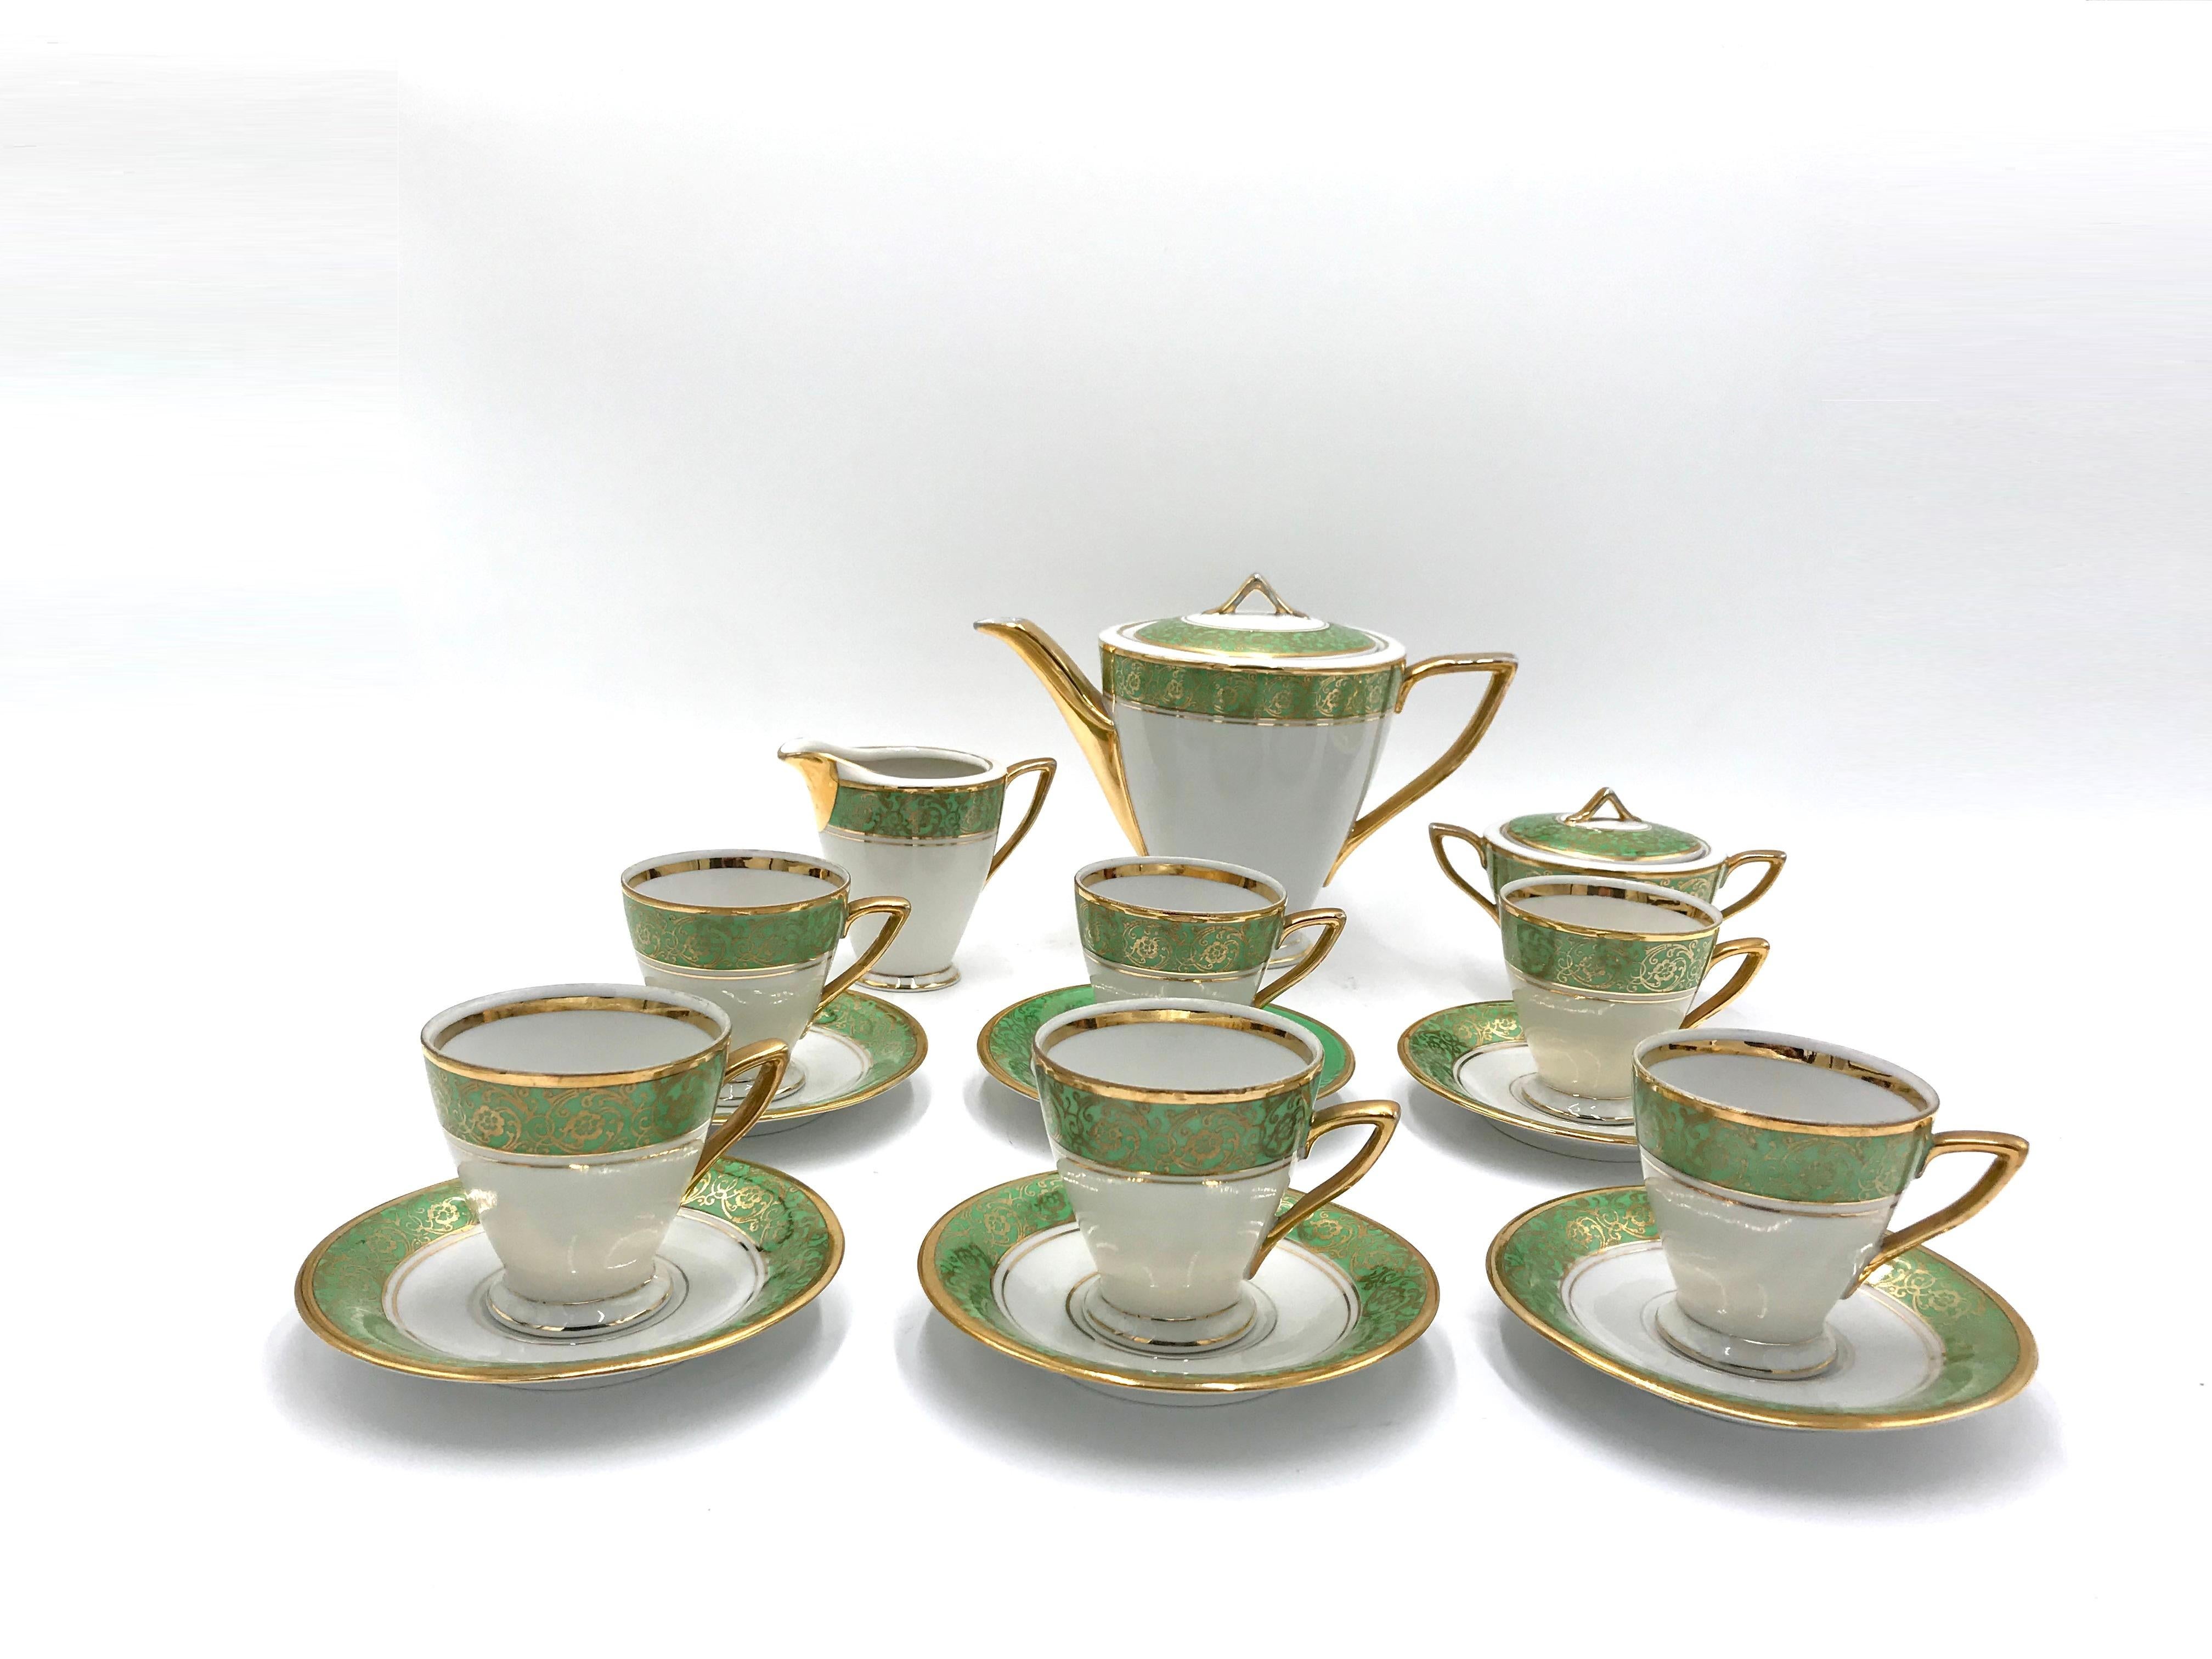 Porzellan-Kaffeeservice, ein seltenes Design des Karolina-Sets aus der Mitte des zwanzigsten Jahrhunderts.

Das Service besteht aus einer Kanne, einem Milchkännchen, einer Zuckerdose, 6 Tassen und 6 Untertassen. Eine Untertasse hat eine stärker